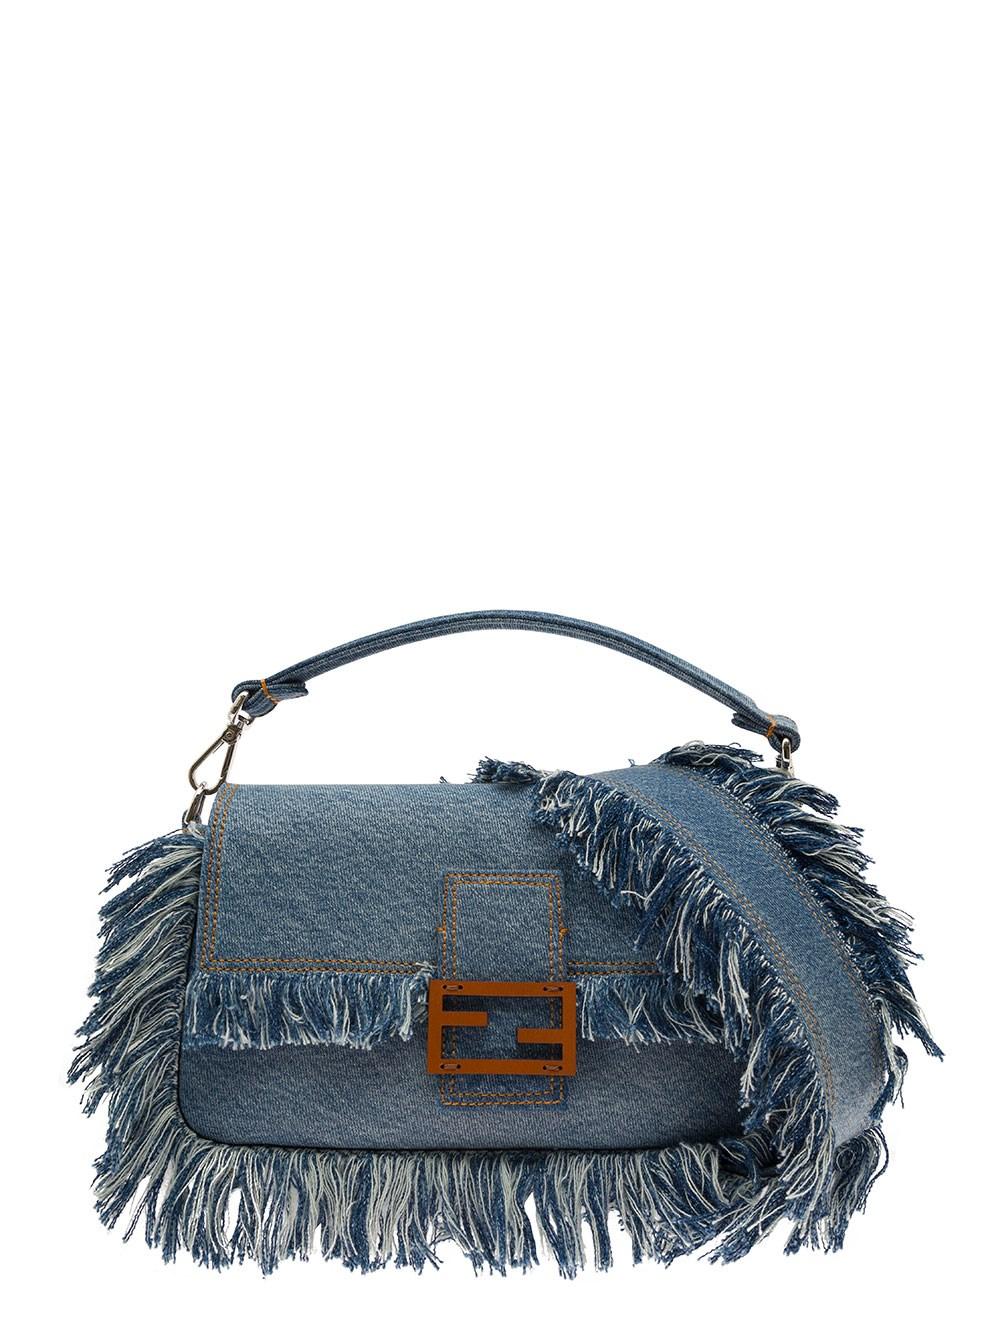 Fendi Baguette Denim & Leather Shoulder Bag In Blue